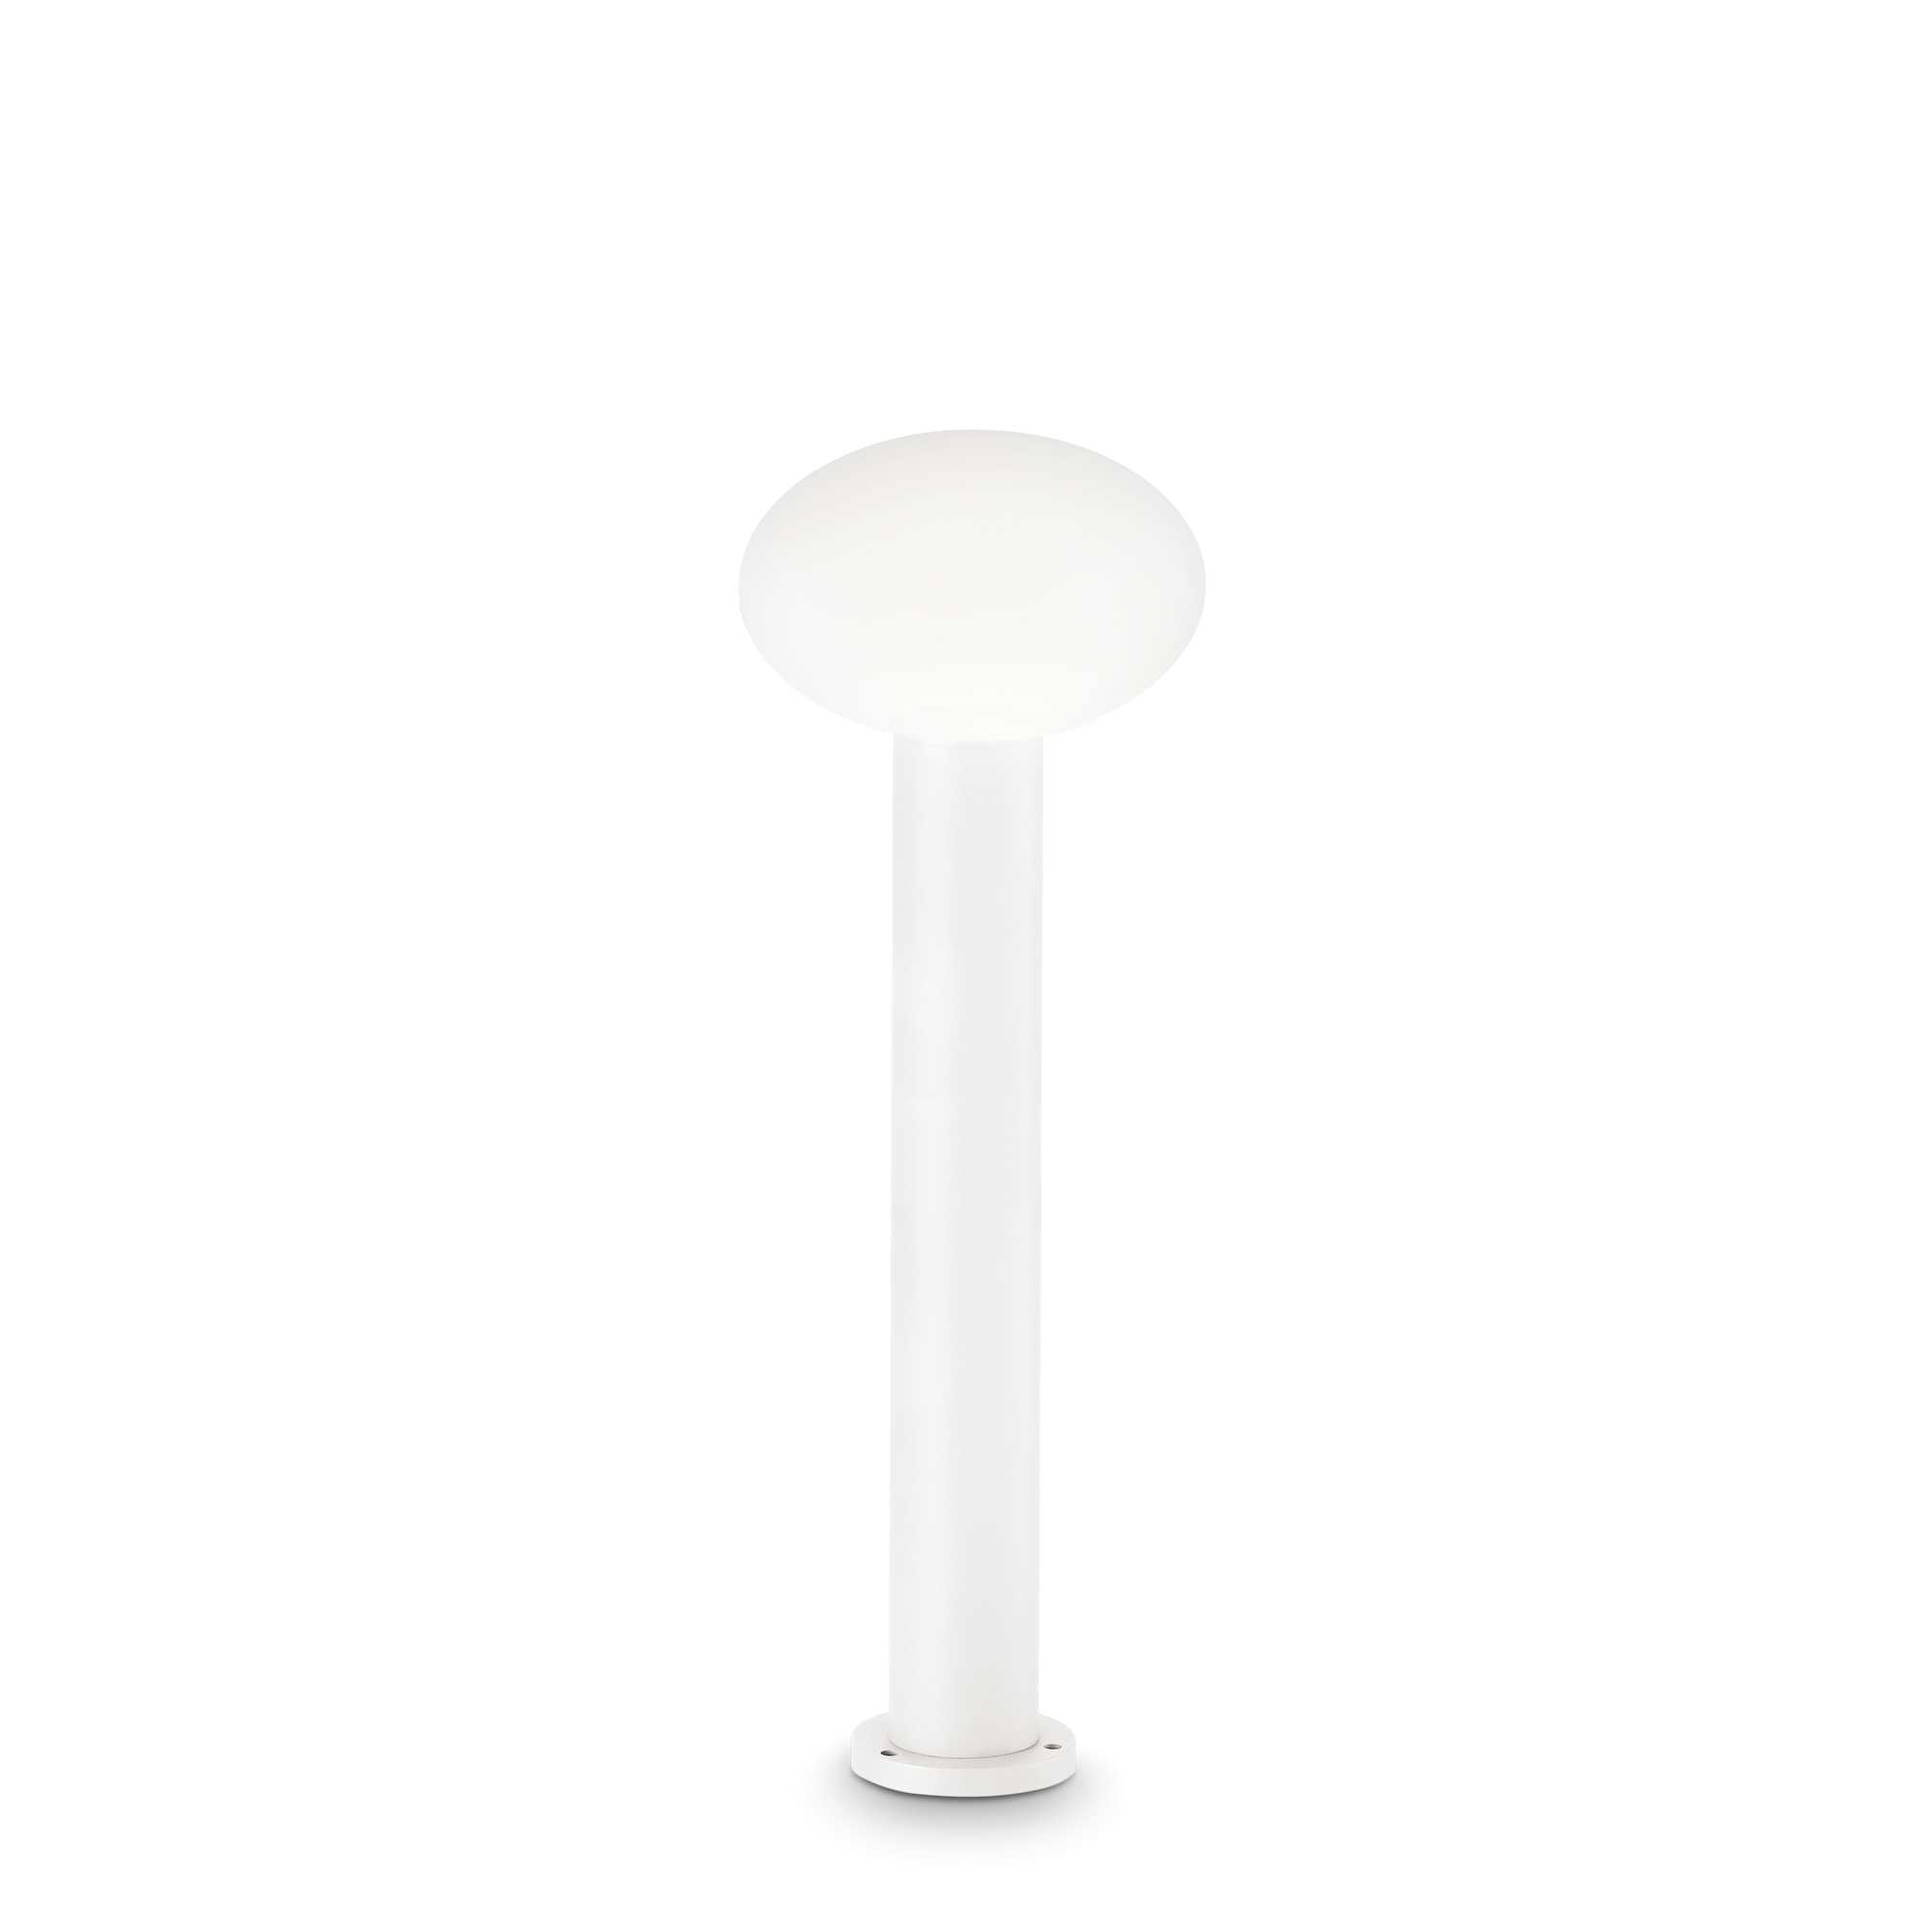 AD hotelska oprema Vanjska podna lampa Clio mpt1- Bijele boje slika proizvoda